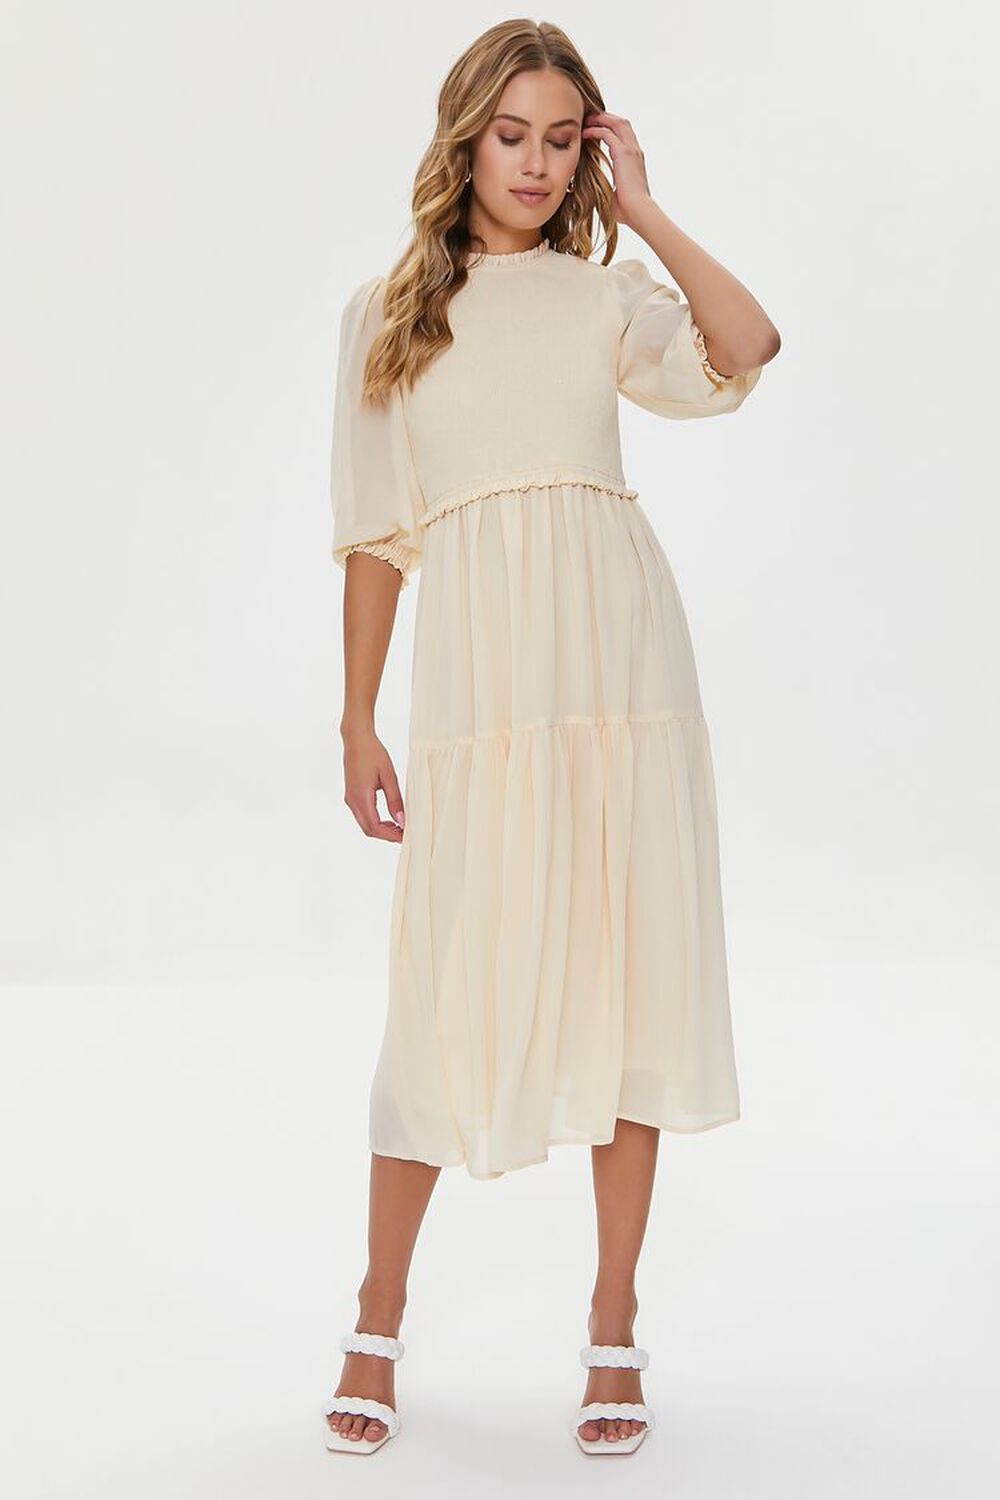 SANDSHELL Smocked Peasant-Sleeve Dress, image 1